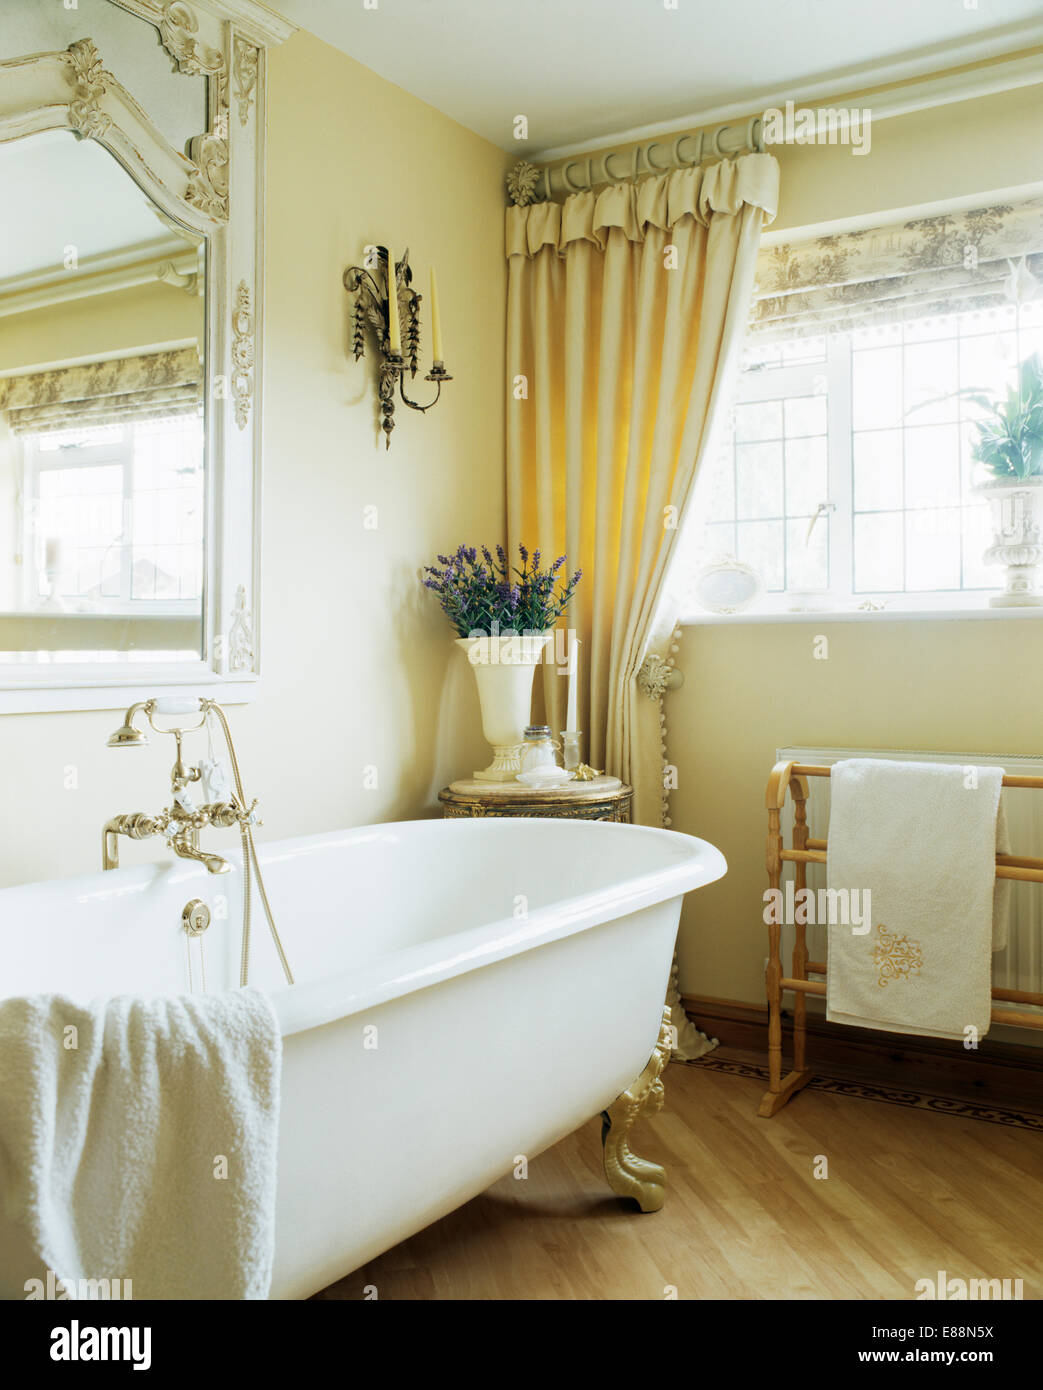 Roll-top bagno in bagno di crema con la crema tende su finestra sopra riscaldata scaldasalviette Foto Stock